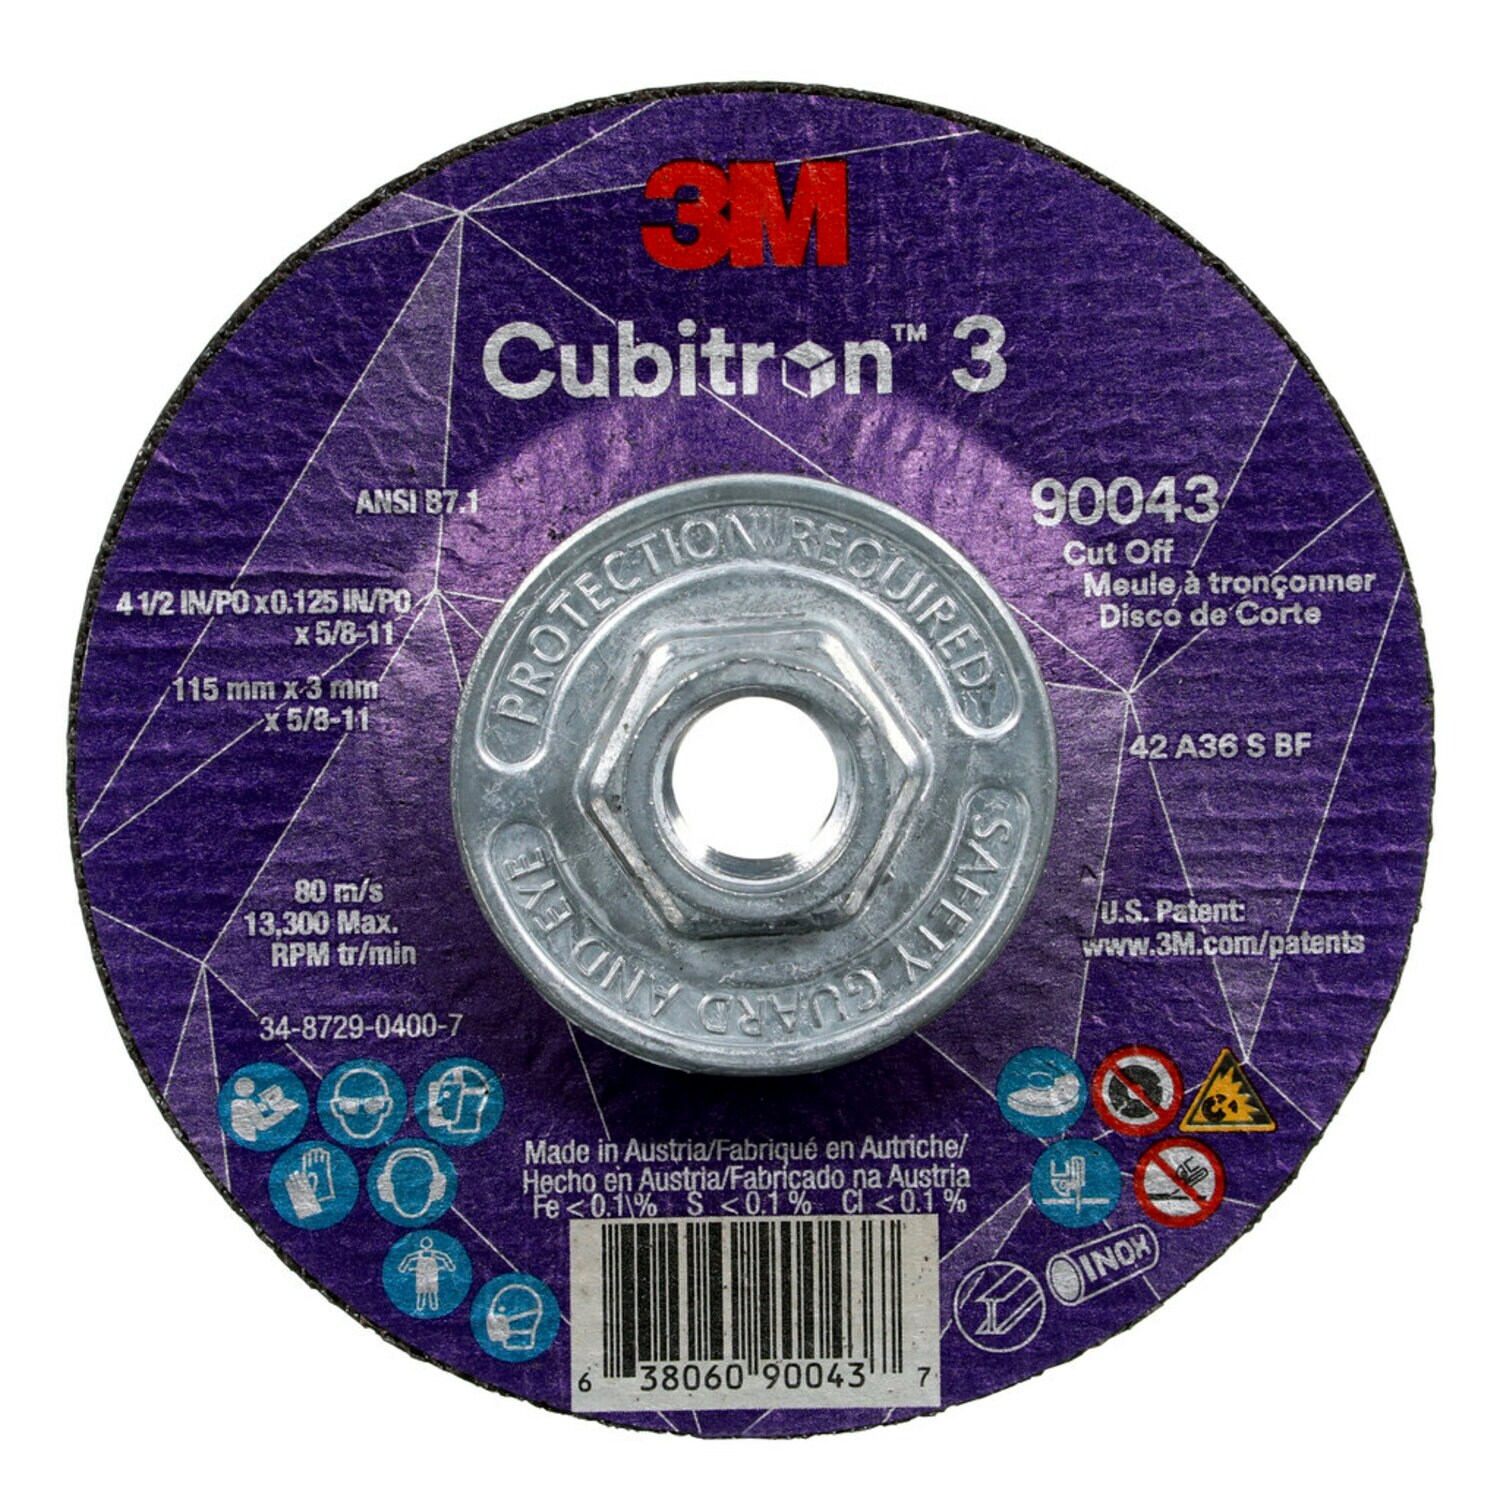 7100313187 - 3M Cubitron 3 Cut-Off Wheel, 90043, 36+, T27, 4-1/2 in x 0.125 in x
5/8 in-11 (115 x 3 mm x 5/8-11 in), ANSI, 10 ea/Case